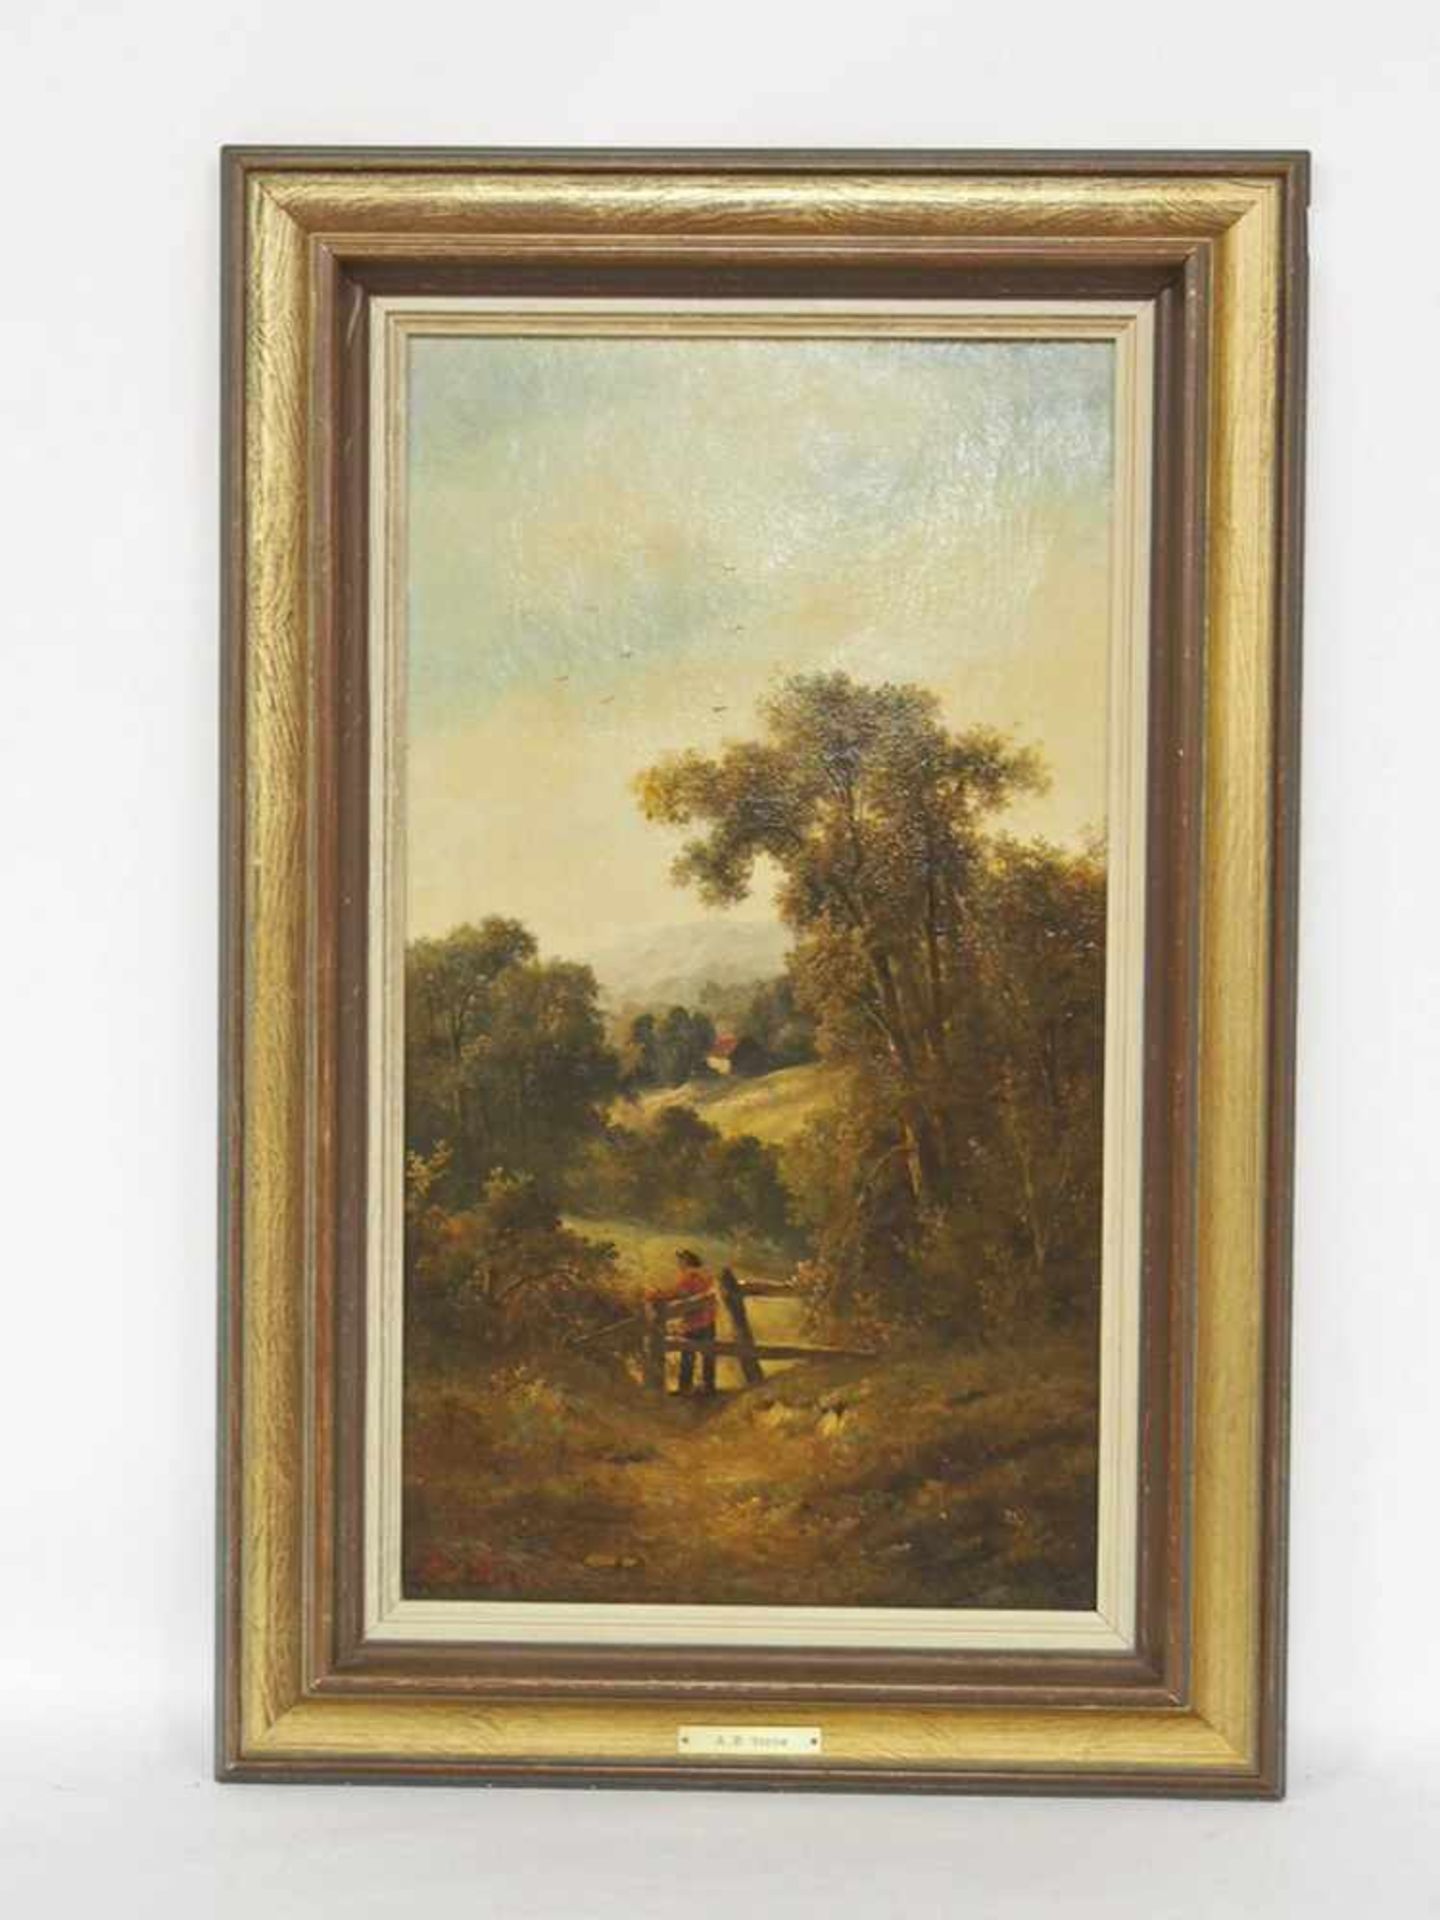 STONE, Alice Balch1876-?Hügellandschaft mit BauerÖl auf Leinwand, signiert unten links, 44 x 24 - Image 2 of 2